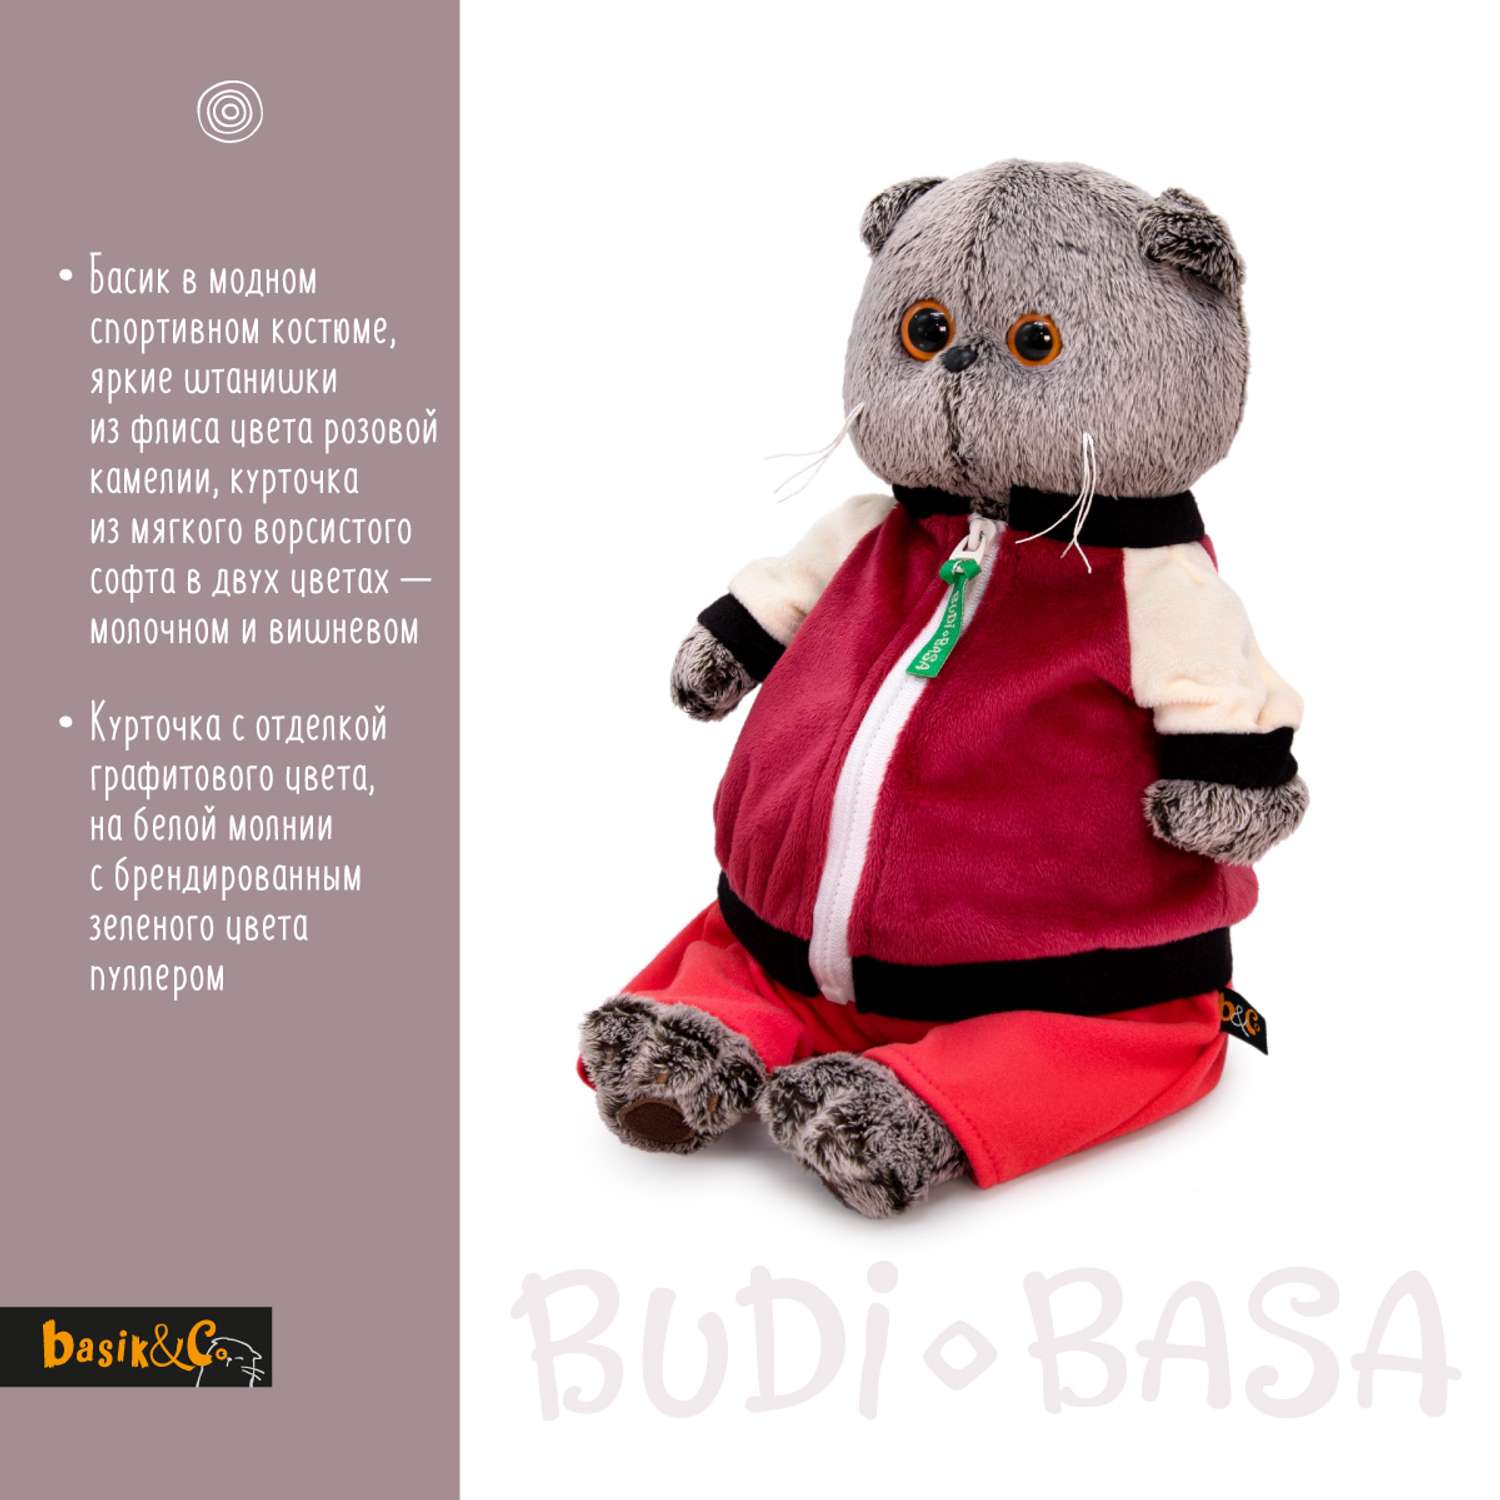 Мягкая игрушка BUDI BASA Басик в спортивной курточке и штанах 25 см Ks25-227 - фото 2